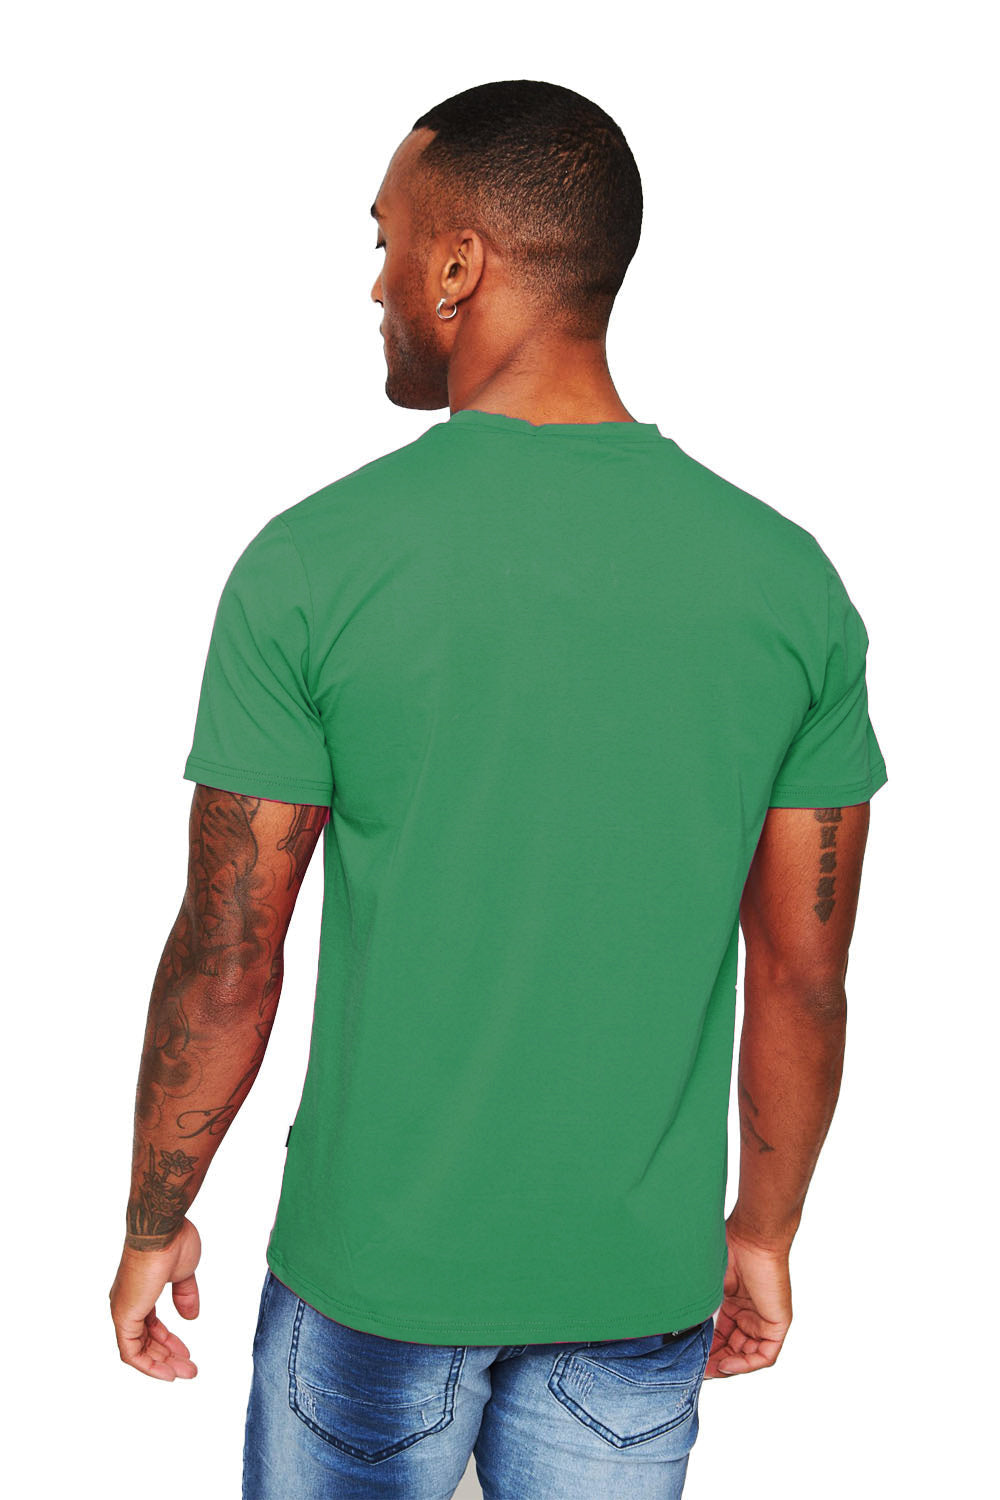 BARABAS Men's Solid Color V-neck T-shirts VTV216 Green